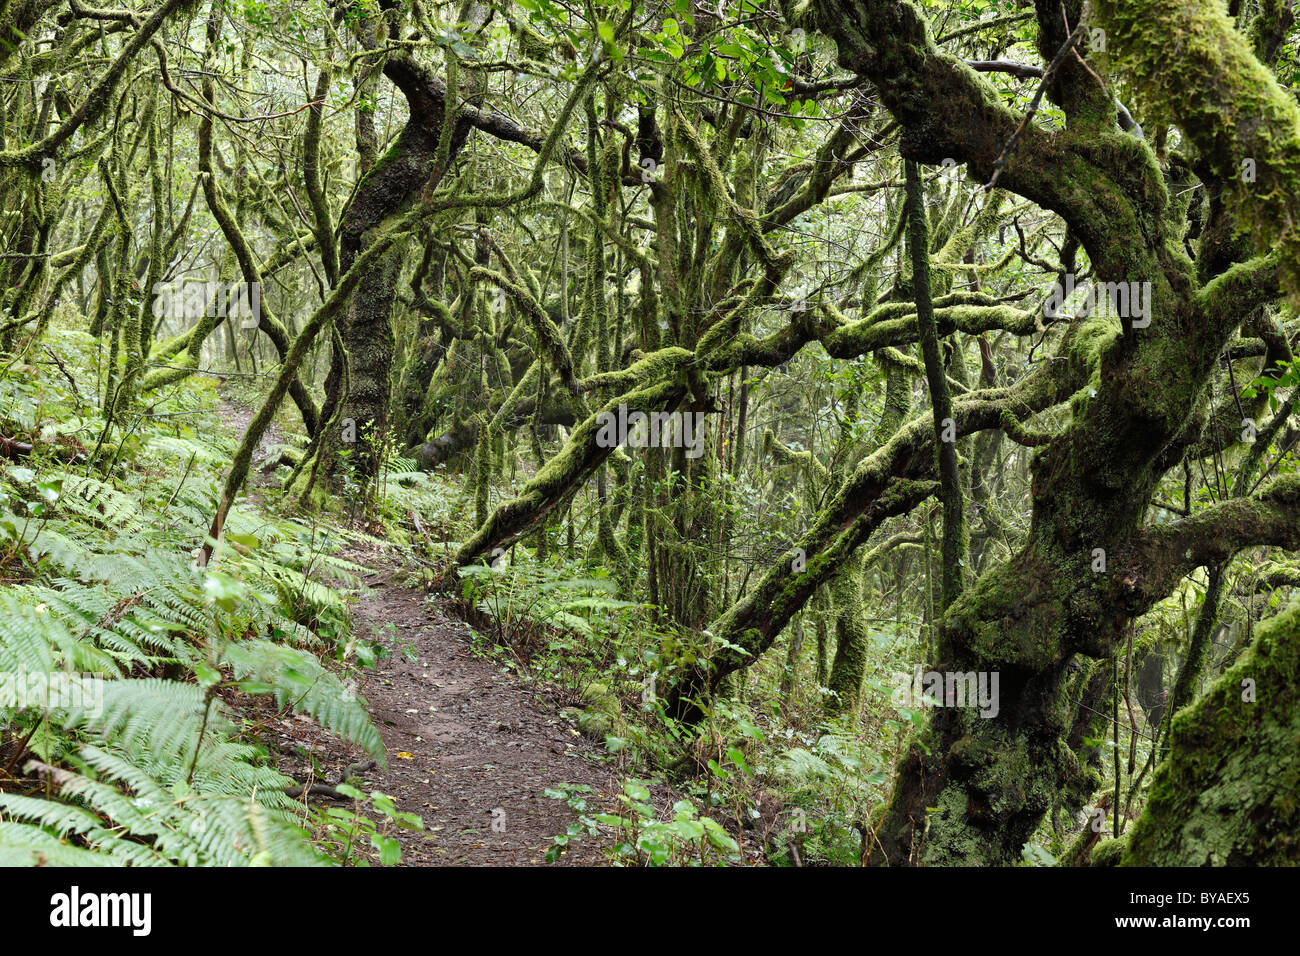 Waldweg in einem Wald von Lorbeerbäumen, Nationalpark Garajonay, Insel La Gomera, Kanarische Inseln, Spanien, Europa Stockfoto